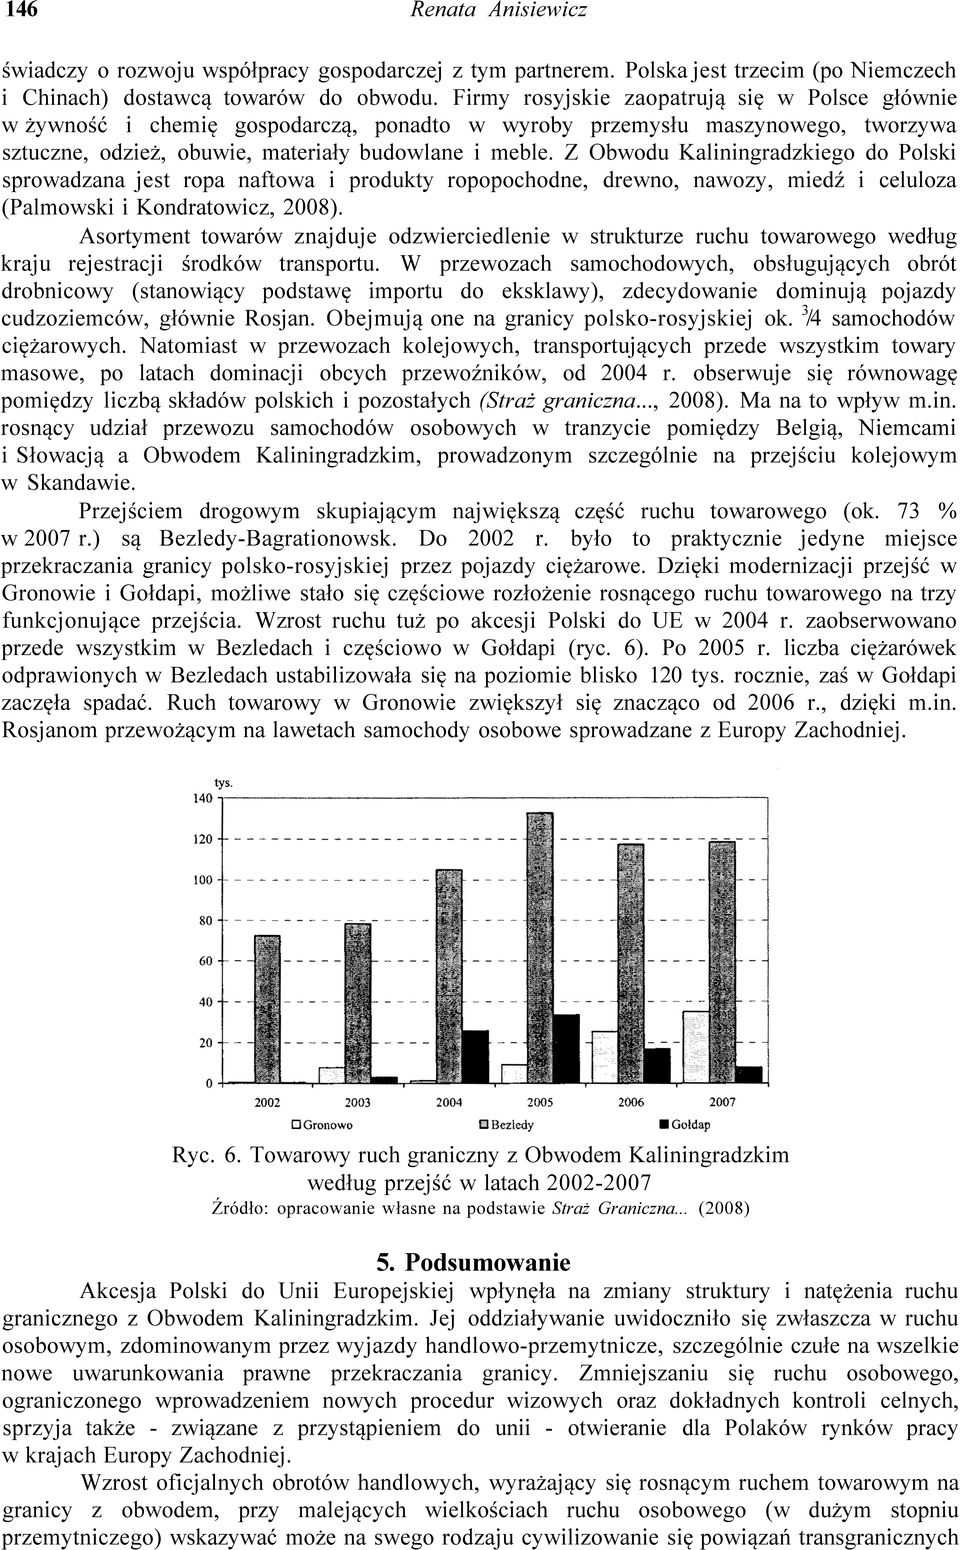 Z Obwodu Kaliningradzkiego do Polski sprowadzana jest ropa naftowa i produkty ropopochodne, drewno, nawozy, miedź i celuloza (Palmowski i Kondratowicz, 2008).